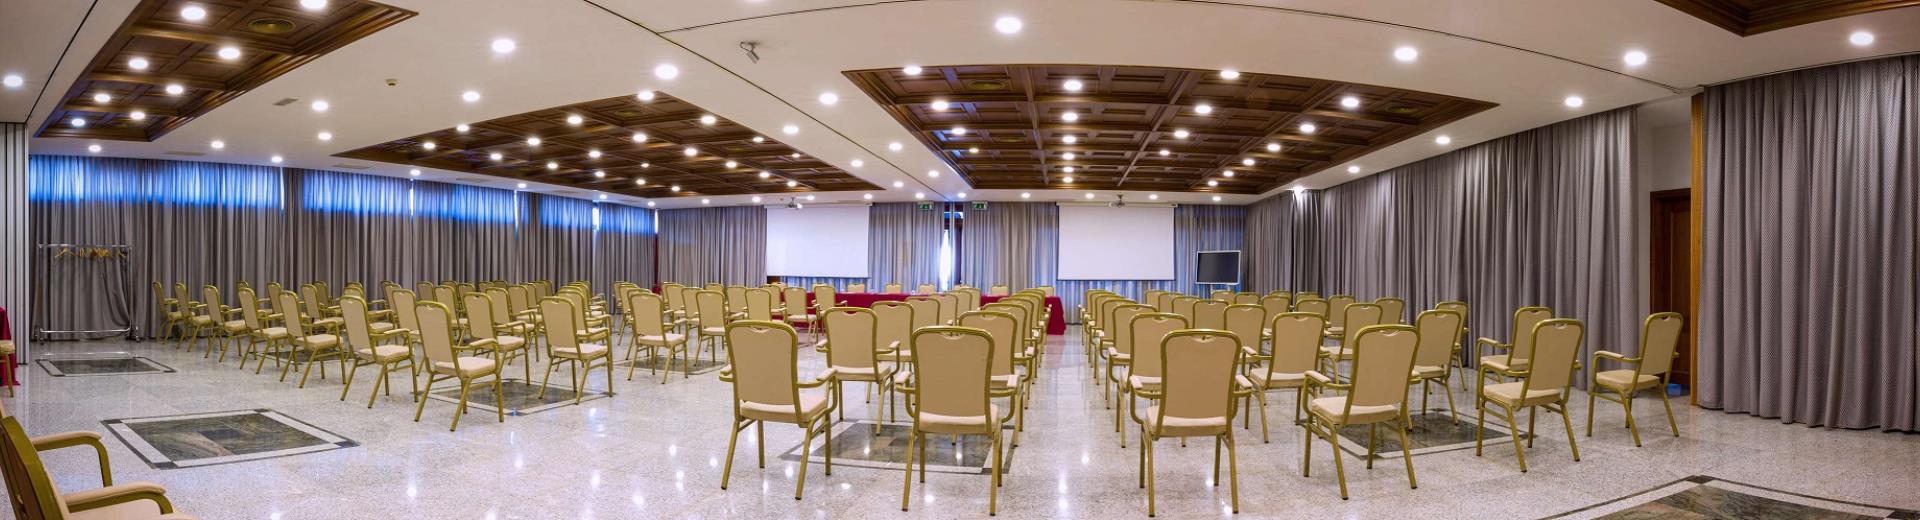 Organizza i tuoi meeting ed eventi a Napoli con Hotel Ferrari: 5 sale meeting polivalenti e attrezzate per ogni tipo di evento.